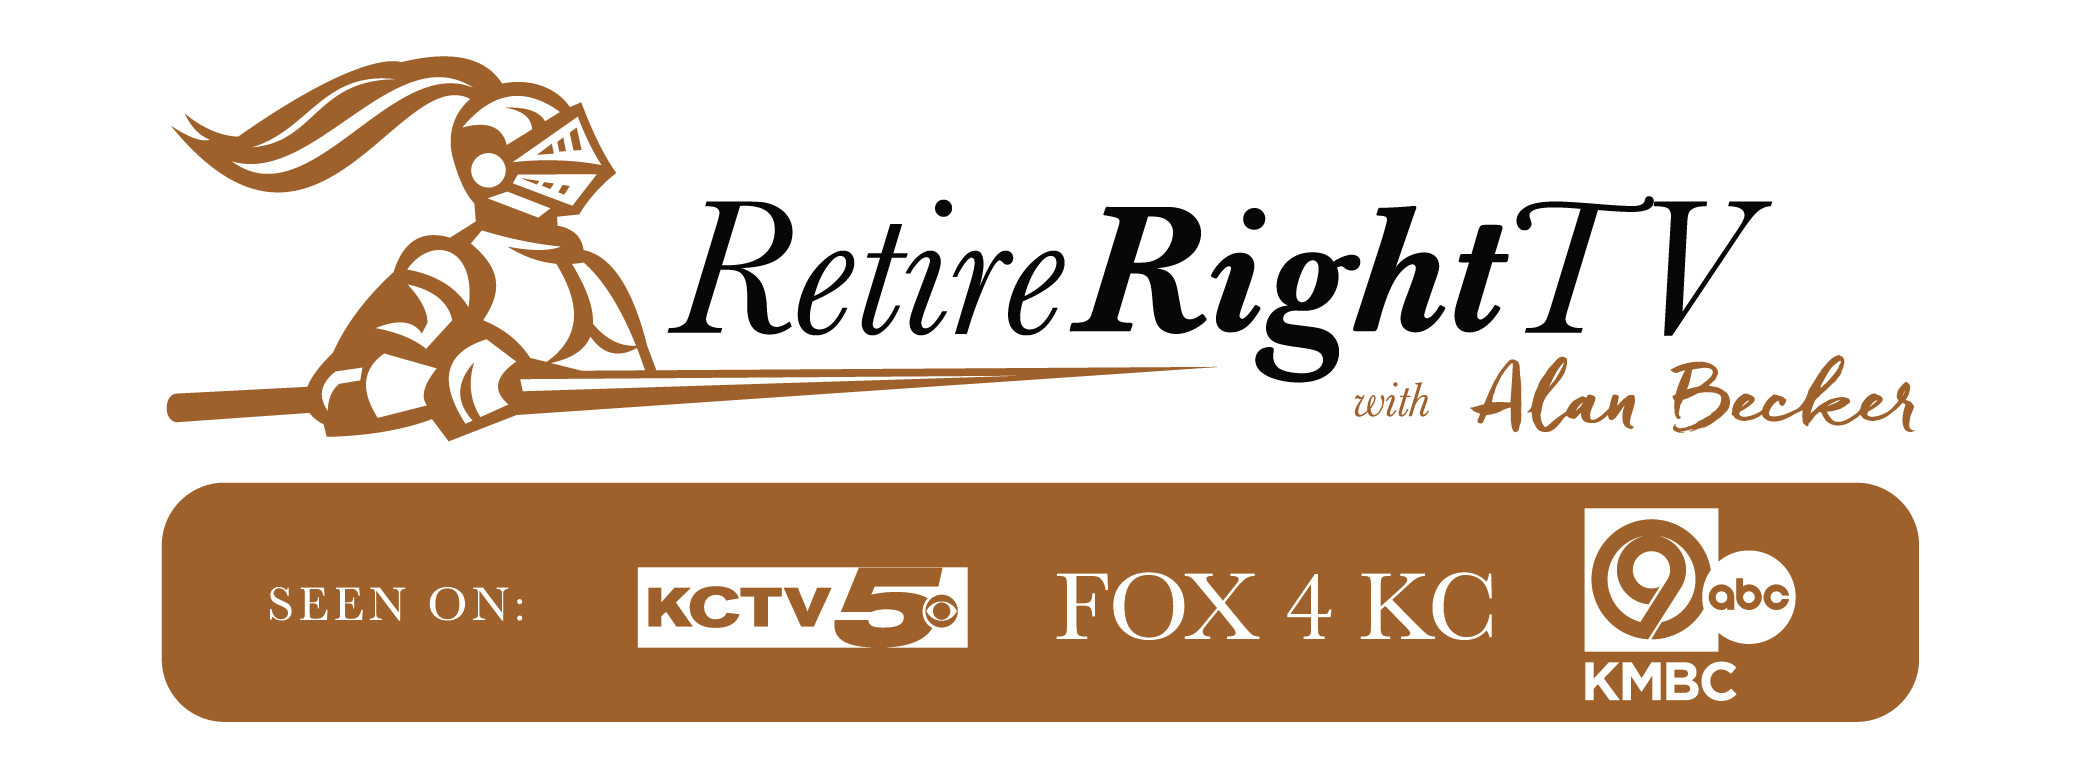 RetireRightTV_logo_COLOR-01